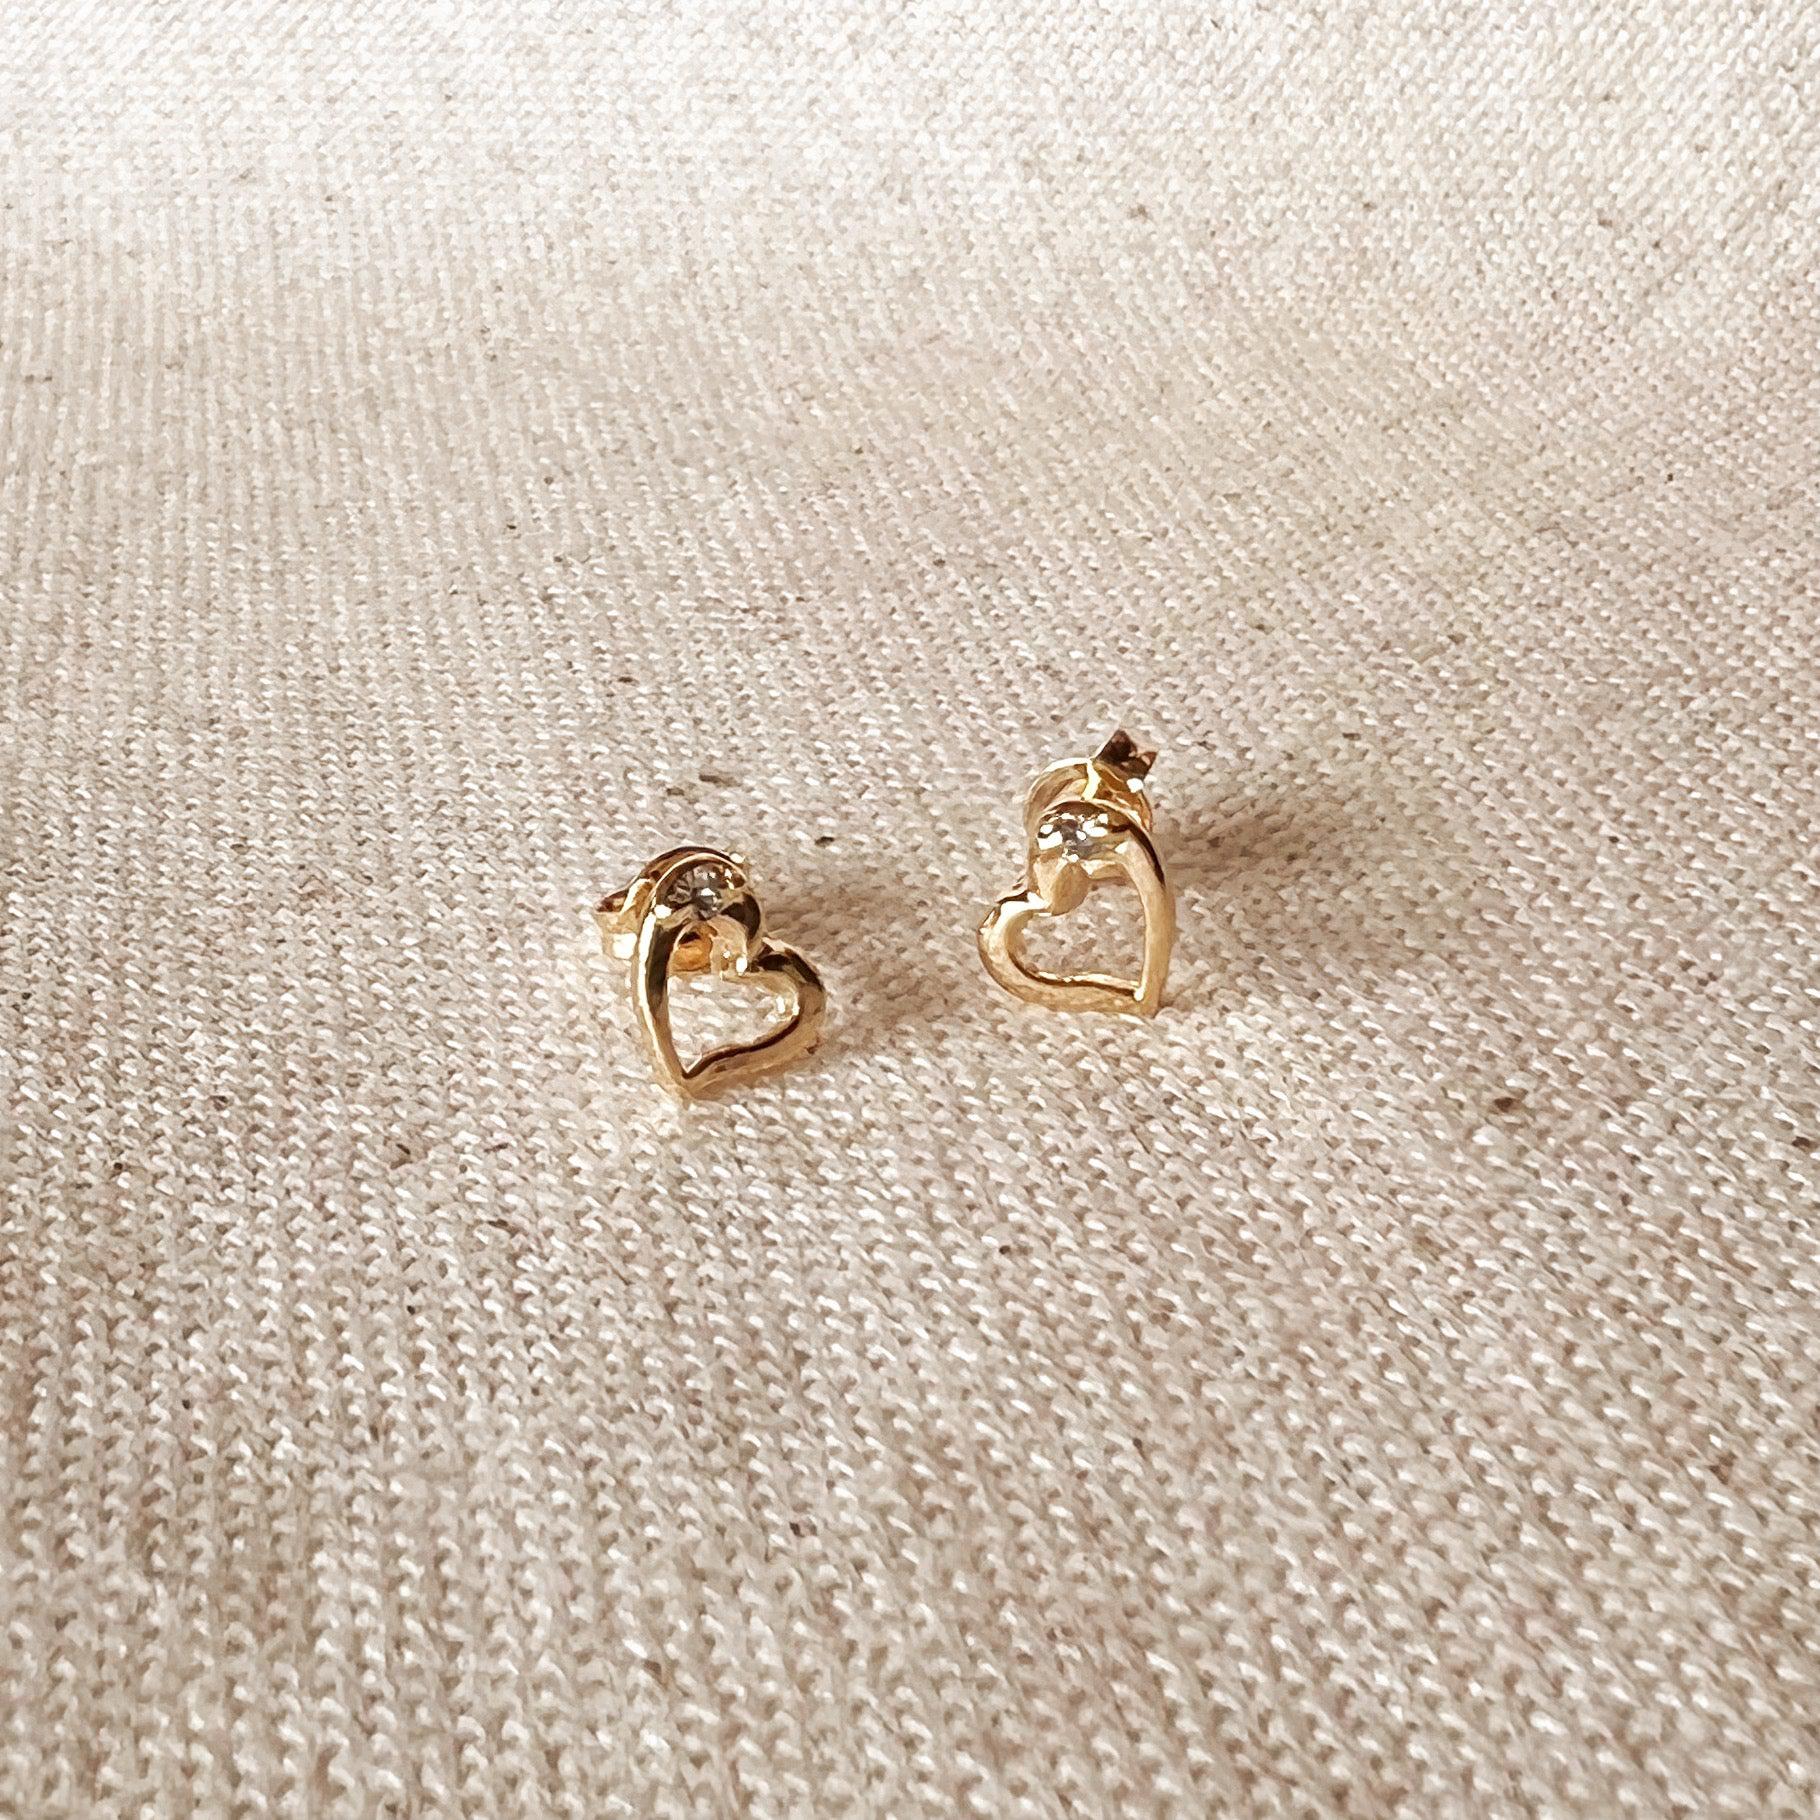 GoldFi 18k Gold Filled Dainty Heart Studs Earrings